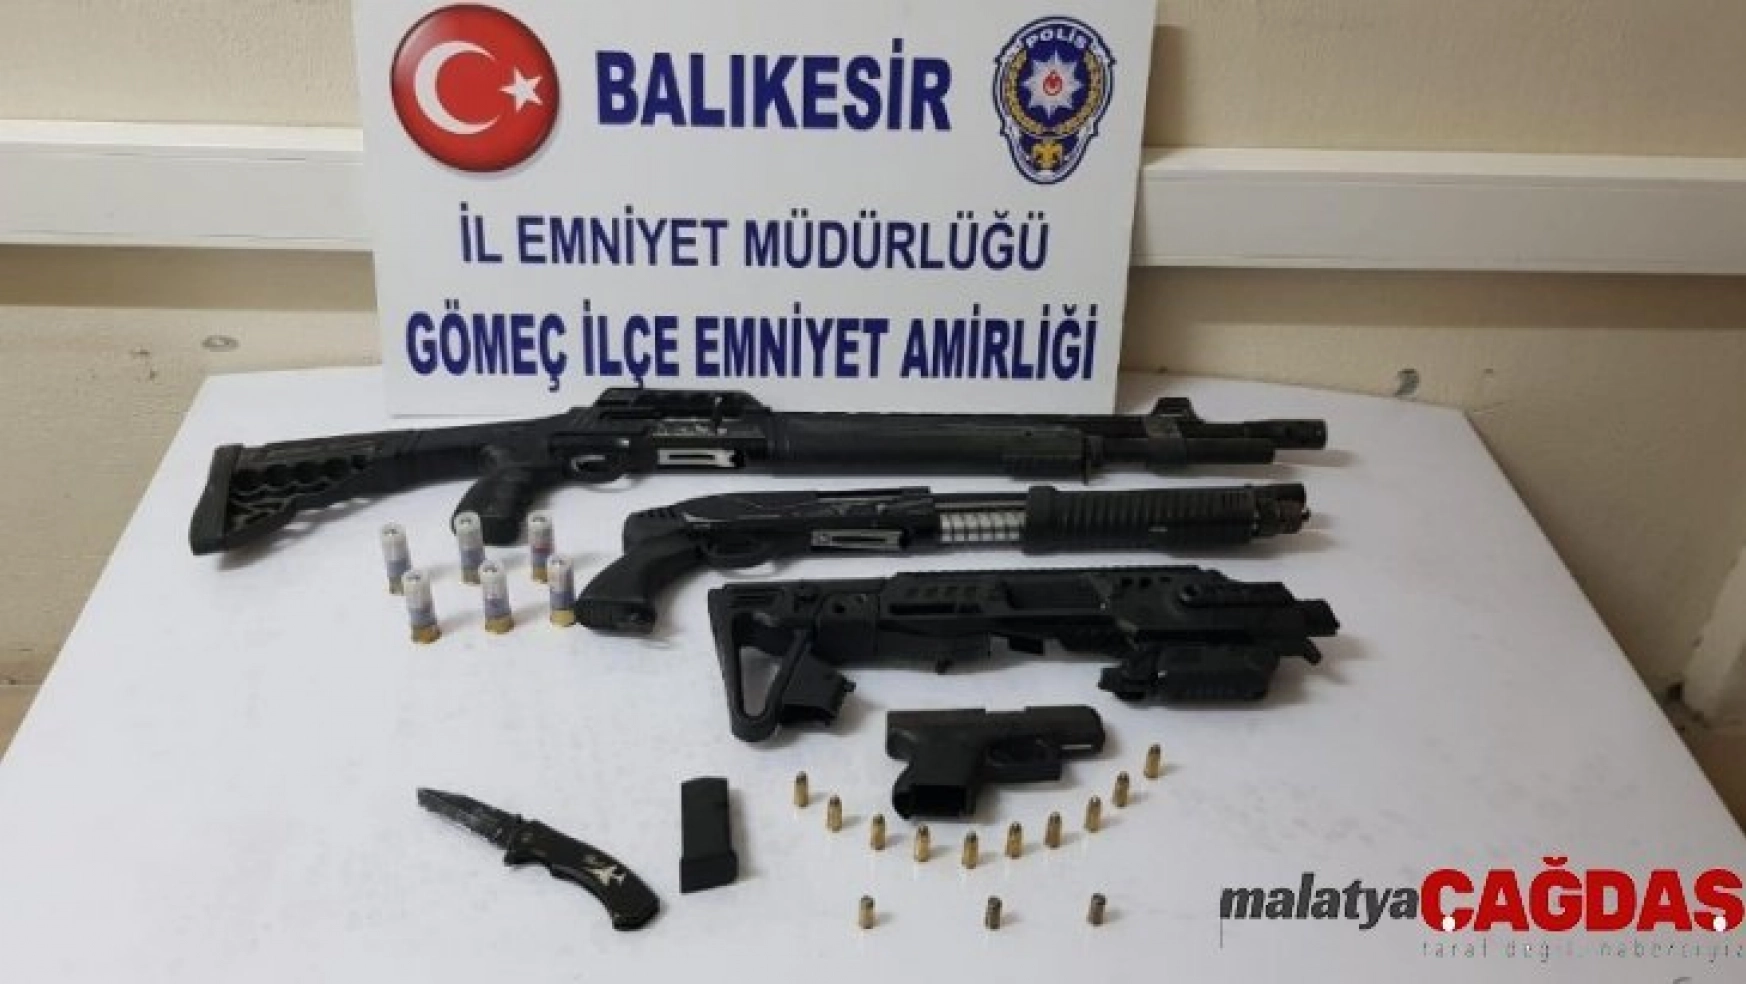 Polis, körfez ilçelerinde yaptığı uygulamalarda 9 adet silah ele geçirdi